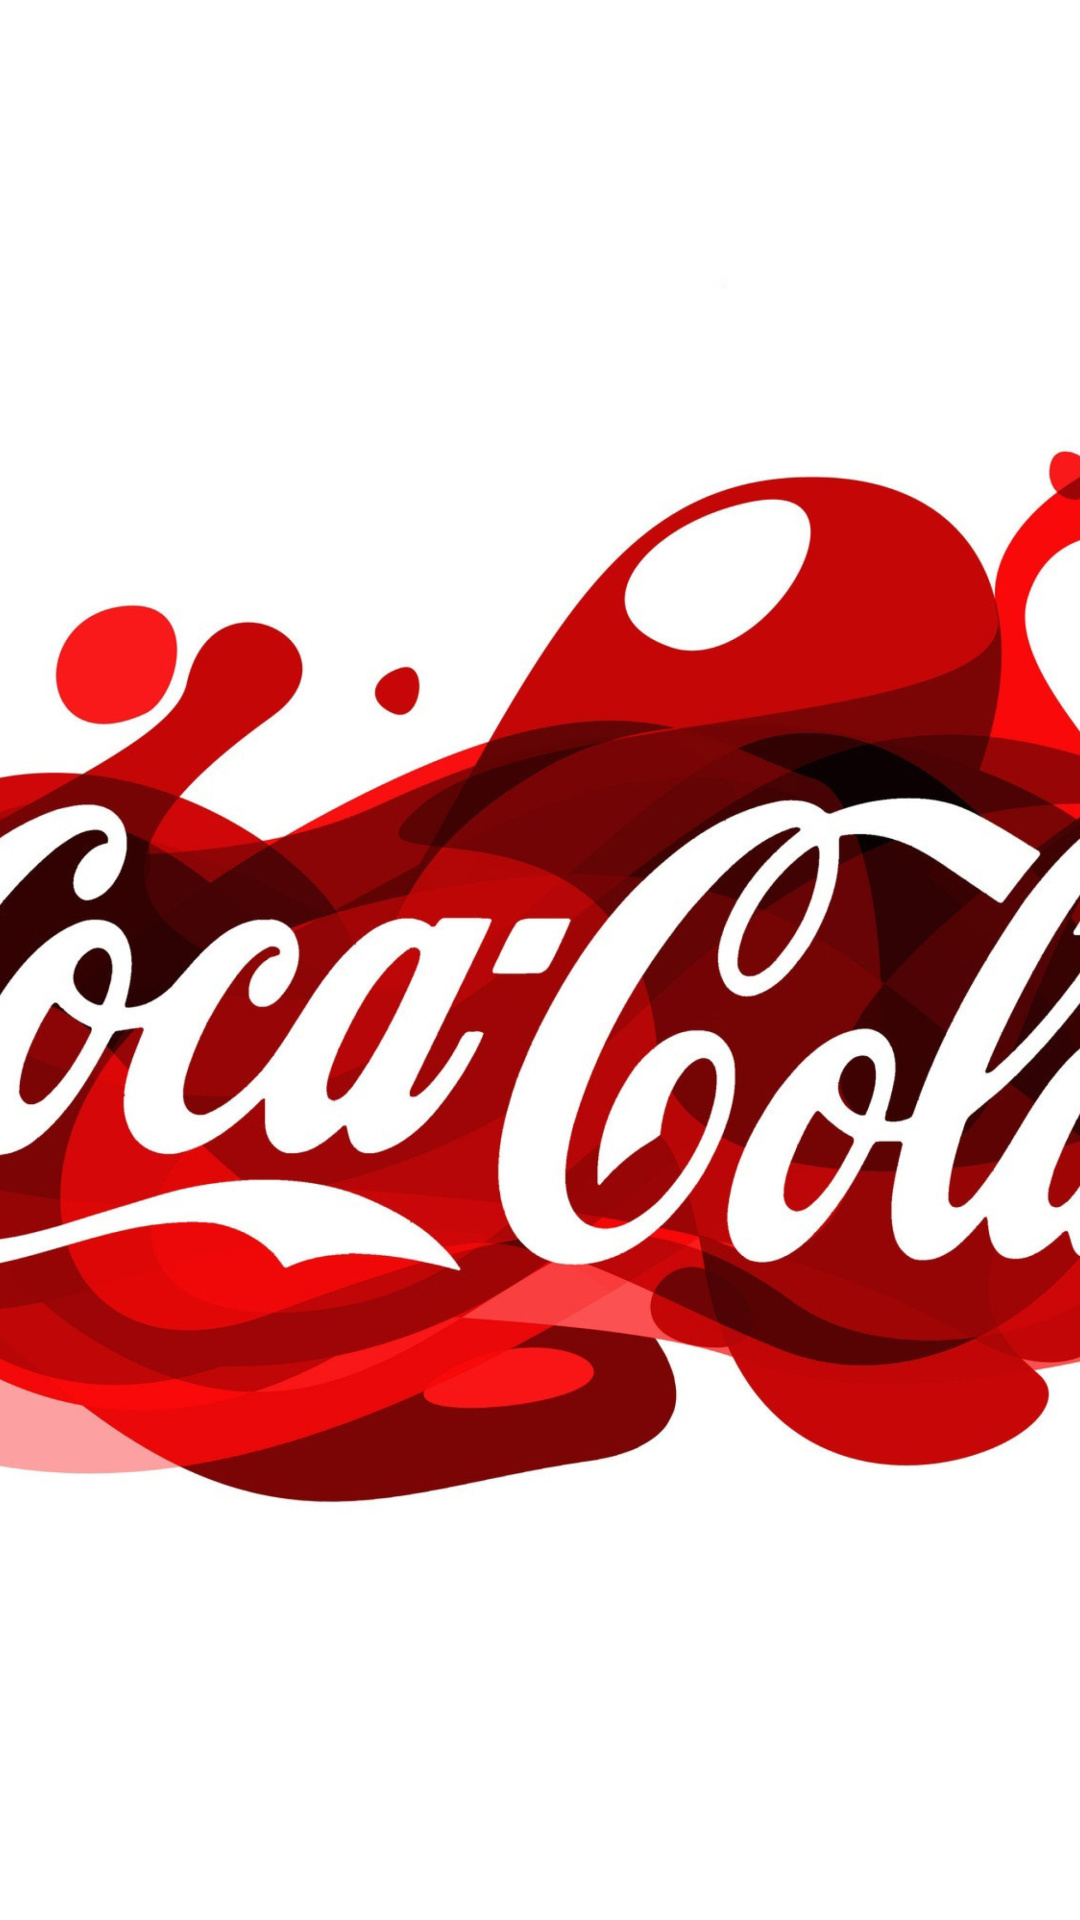 Das Coca Cola Logo Wallpaper 1080x1920